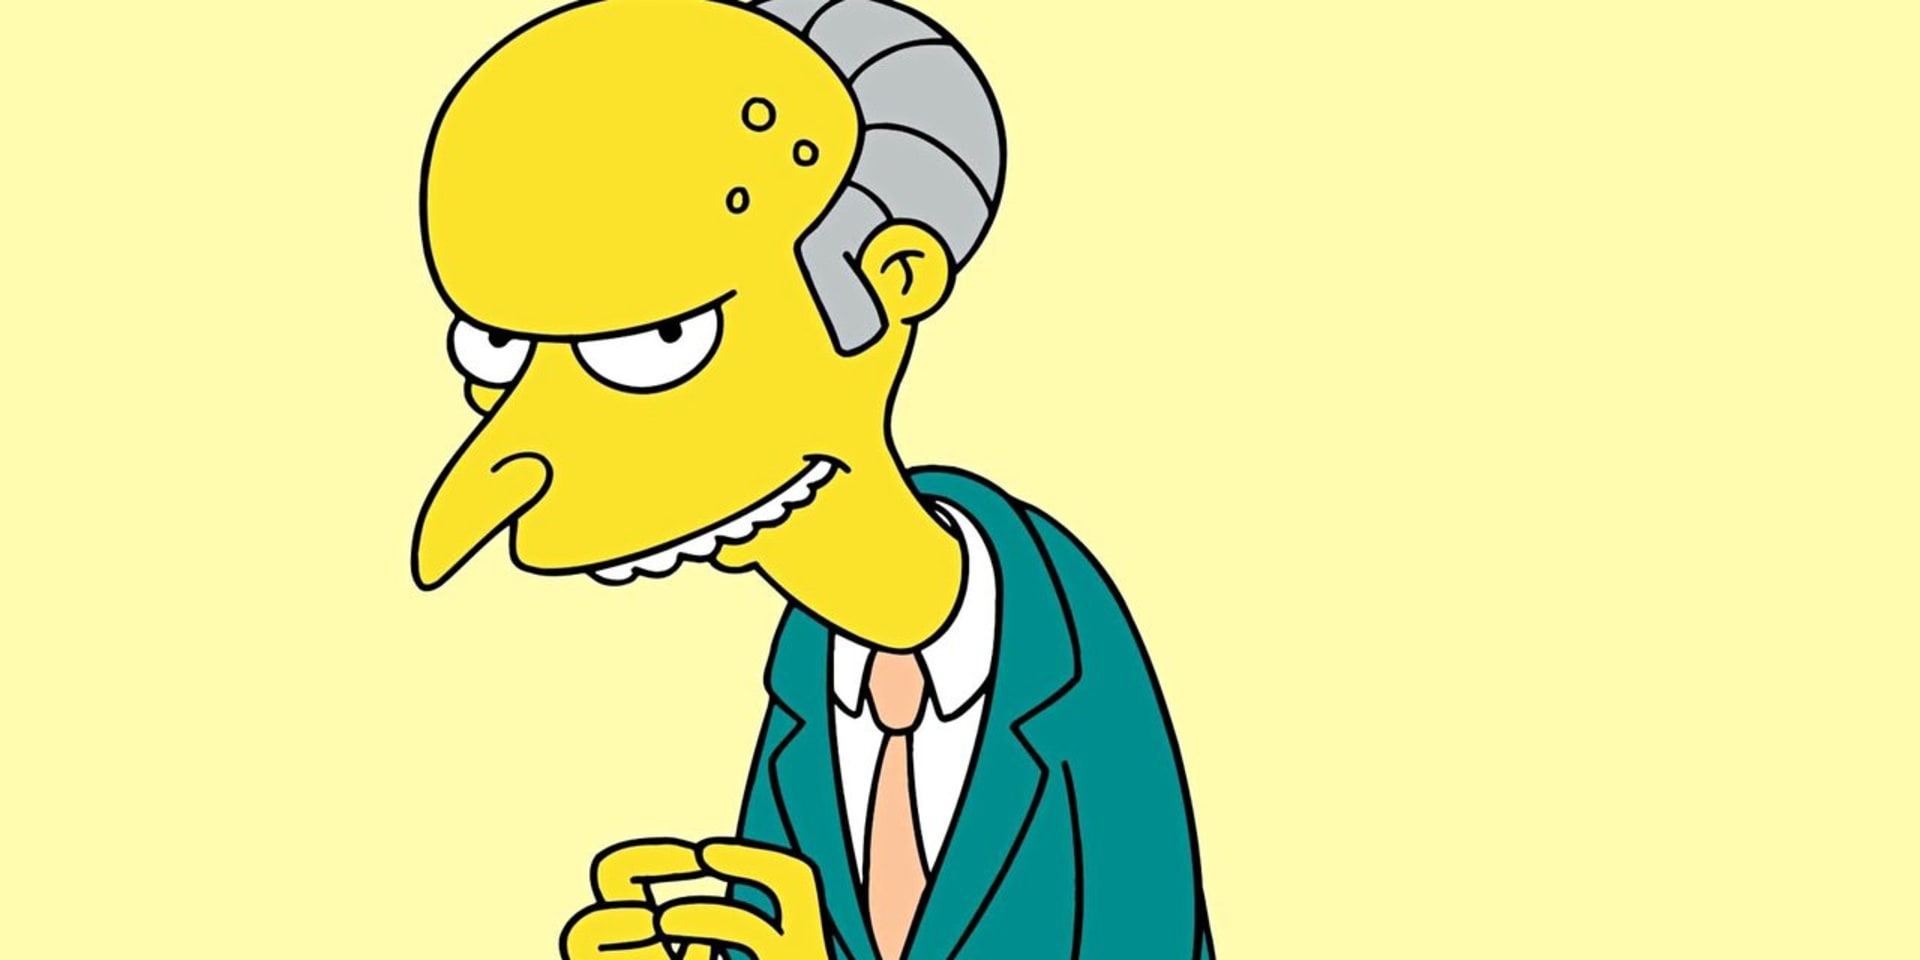 Blíží se konec pana Burnse nebo ne?